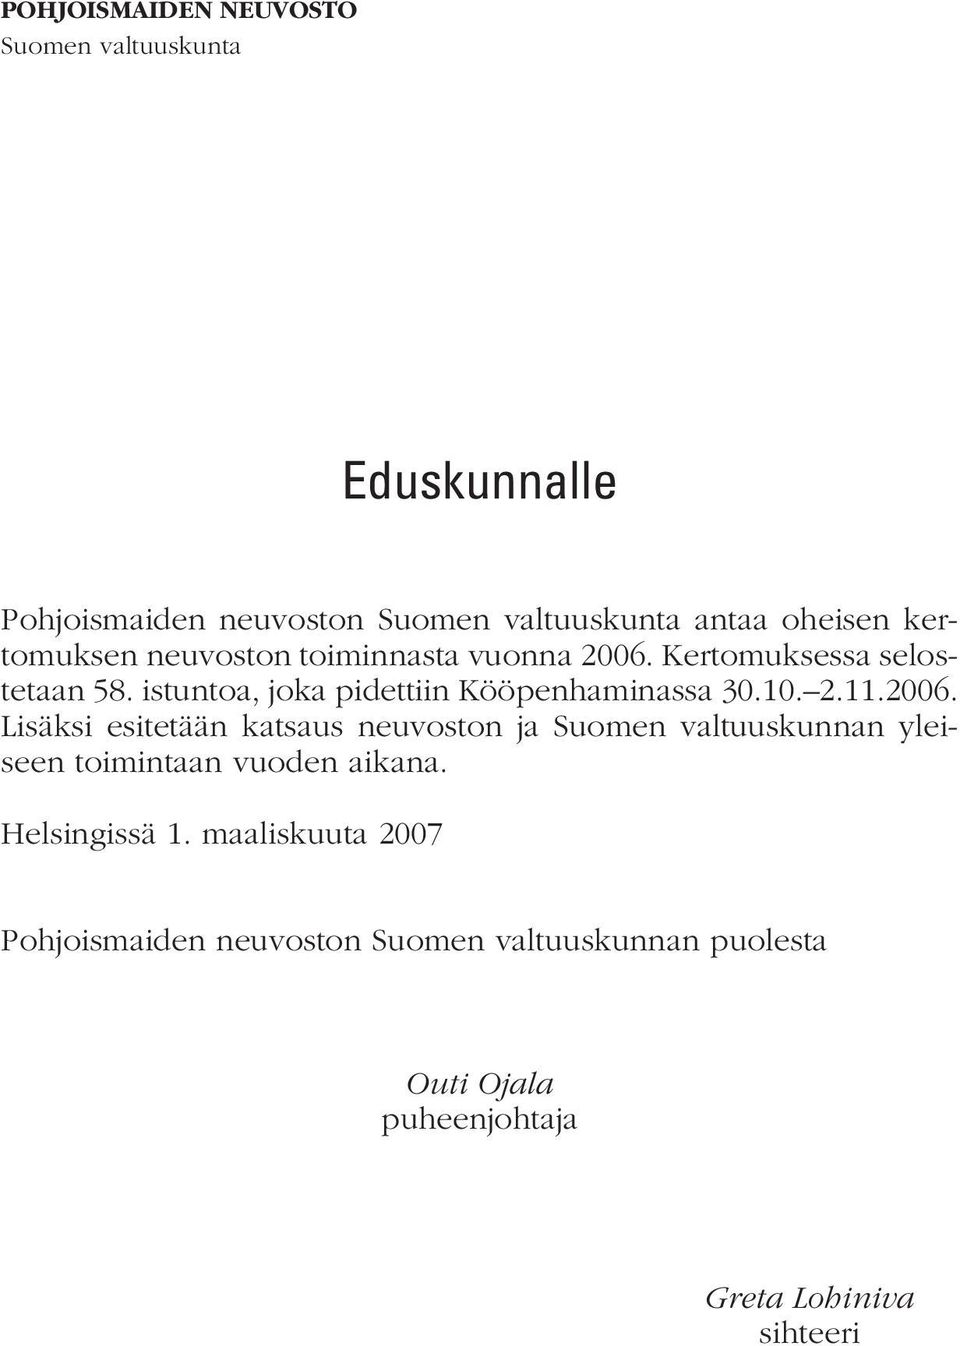 10. 2.11.2006. Lisäksi esitetään kat saus neu vos ton ja Suomen valtuuskunnan yleiseen toimintaan vuoden aikana.